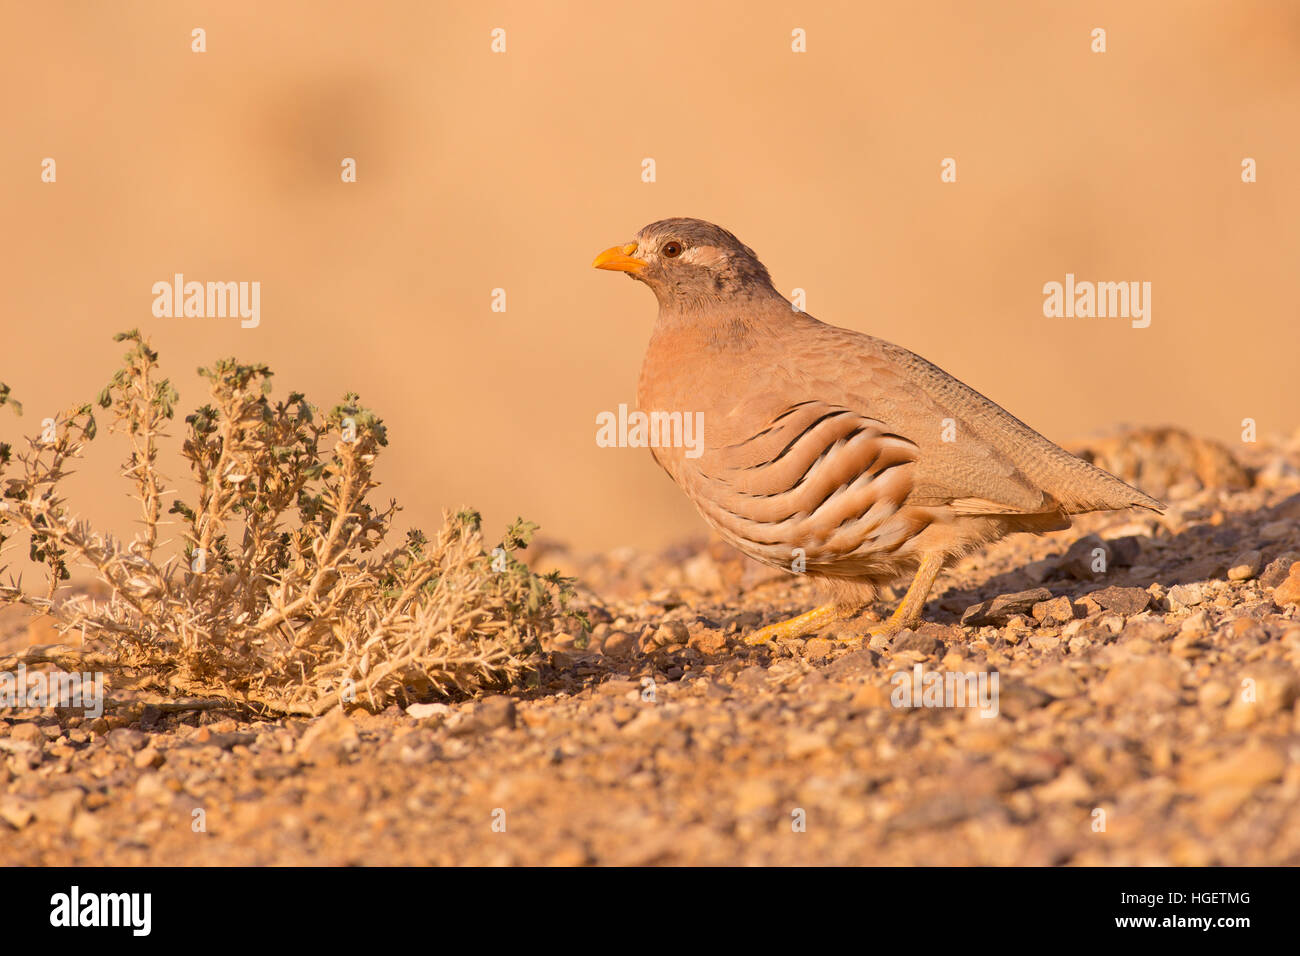 La perdrix de sable (Ammoperdix heyi) est une espèce de passereaux appartenant à la famille des Parulidae. Photographié en Israël Banque D'Images